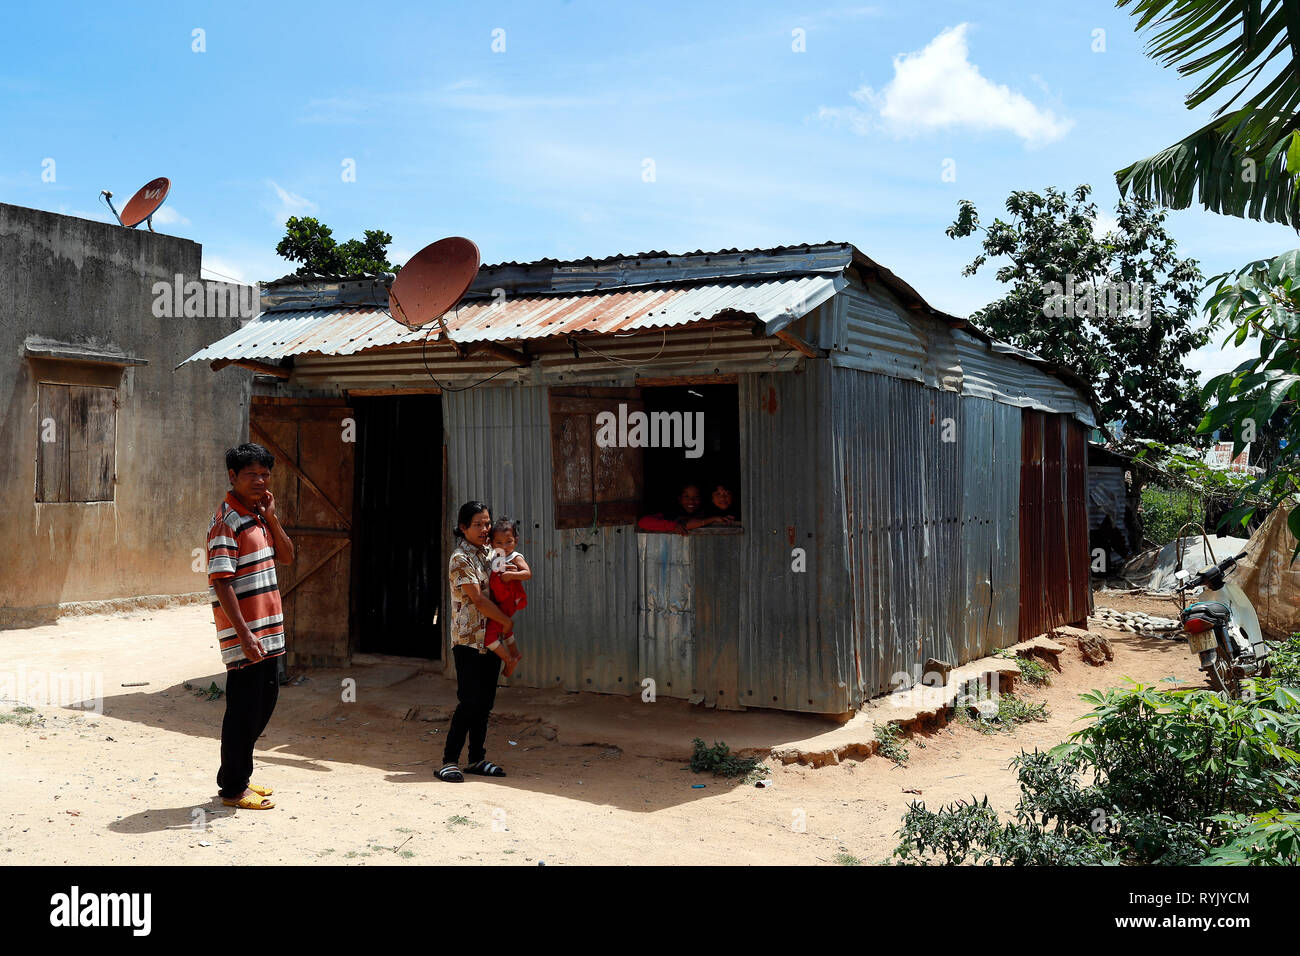 Pobre familia vietnamita que vive en una pequeña barraca consta de chatarra. Dalat. Vietnam. Foto de stock